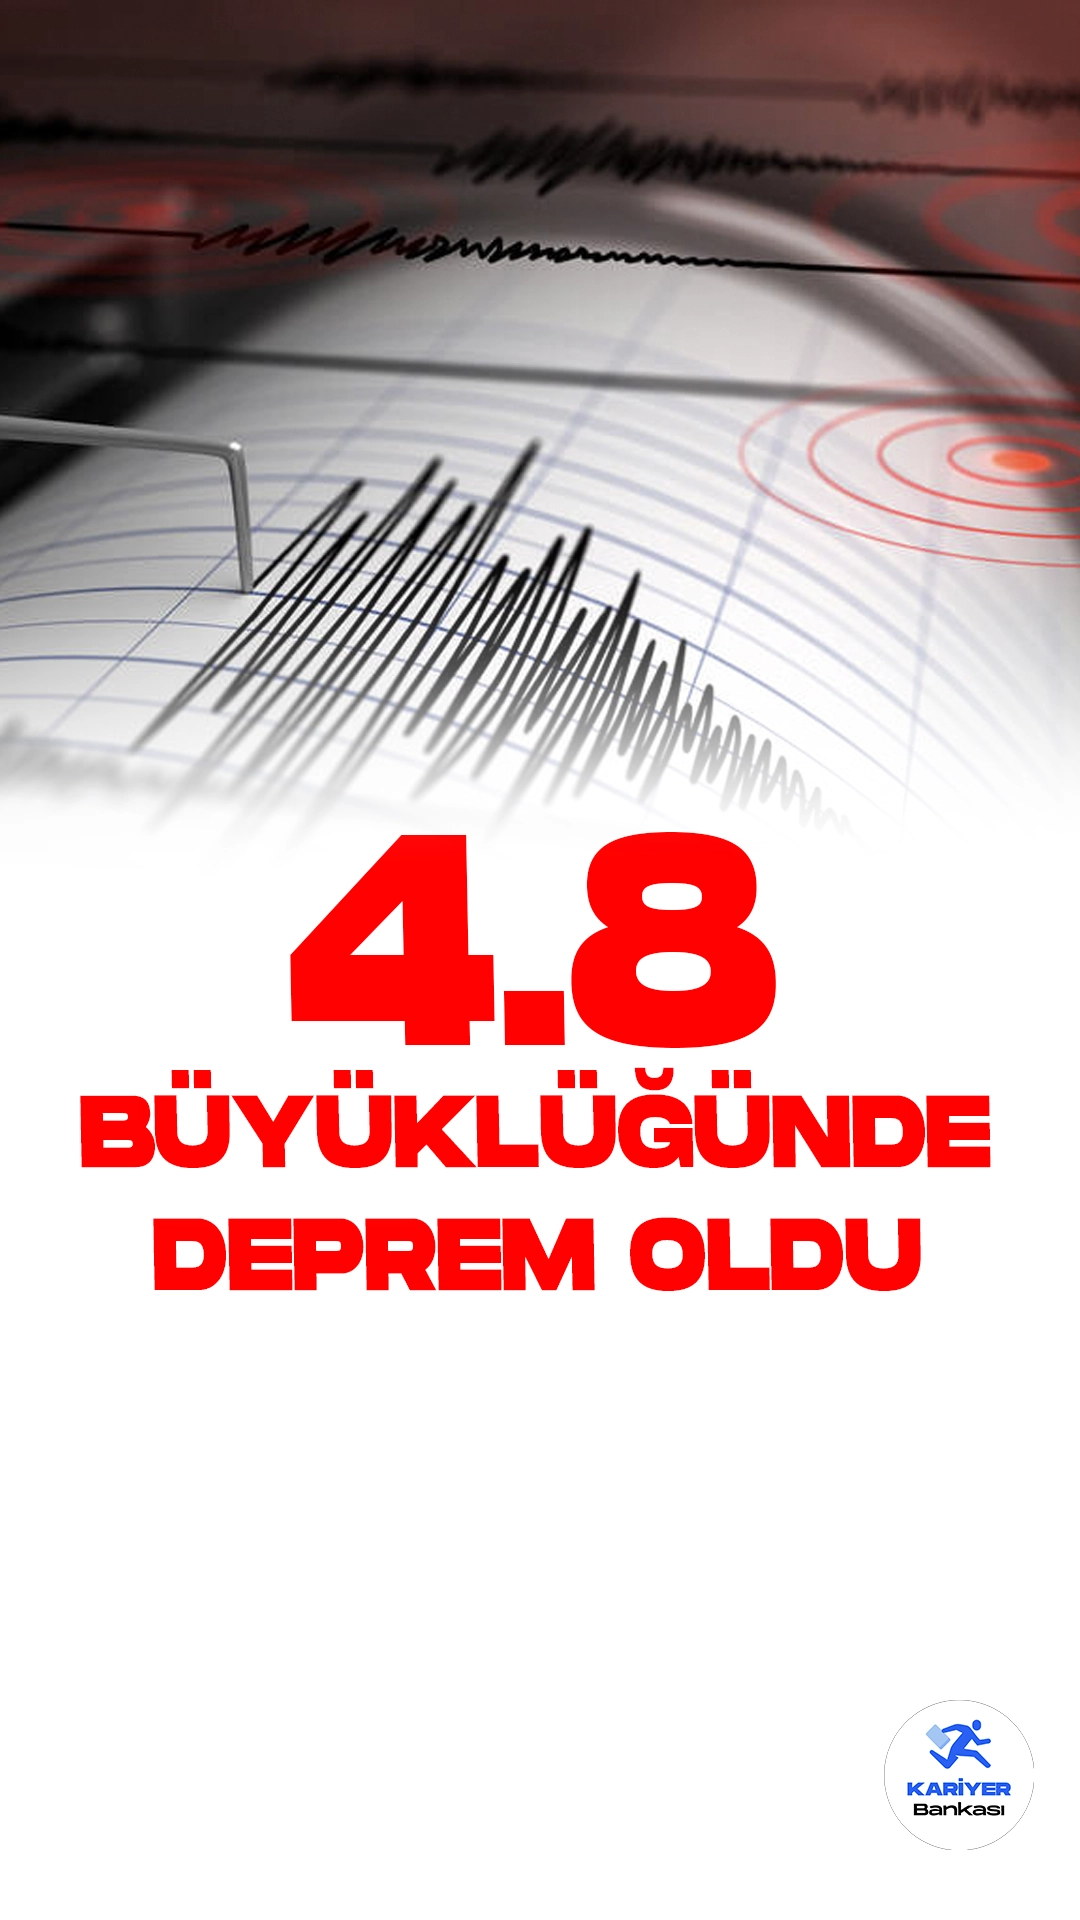 Konya'da 4.8 Büyüklüğünde Deprem Oldu. İçişleri Bakanlığı Afet ve Acil Surum Yönetimi Başkanlığı (AFAD) resmi sayfasından yayımlanan son dakika bilgisine göre, Konya'nın Kulu ilçesinde 4.8 büyüklüğünde deprem meydana geldiği aktarıldı.